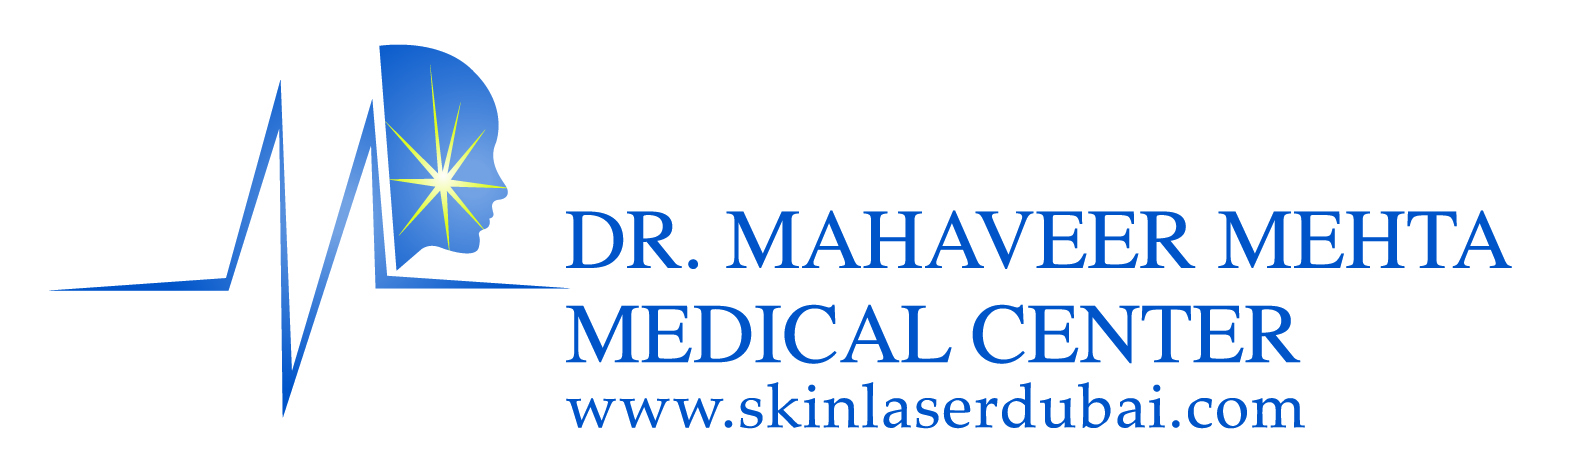 Dr. Mahaveer Mehta Medical Center  Logo